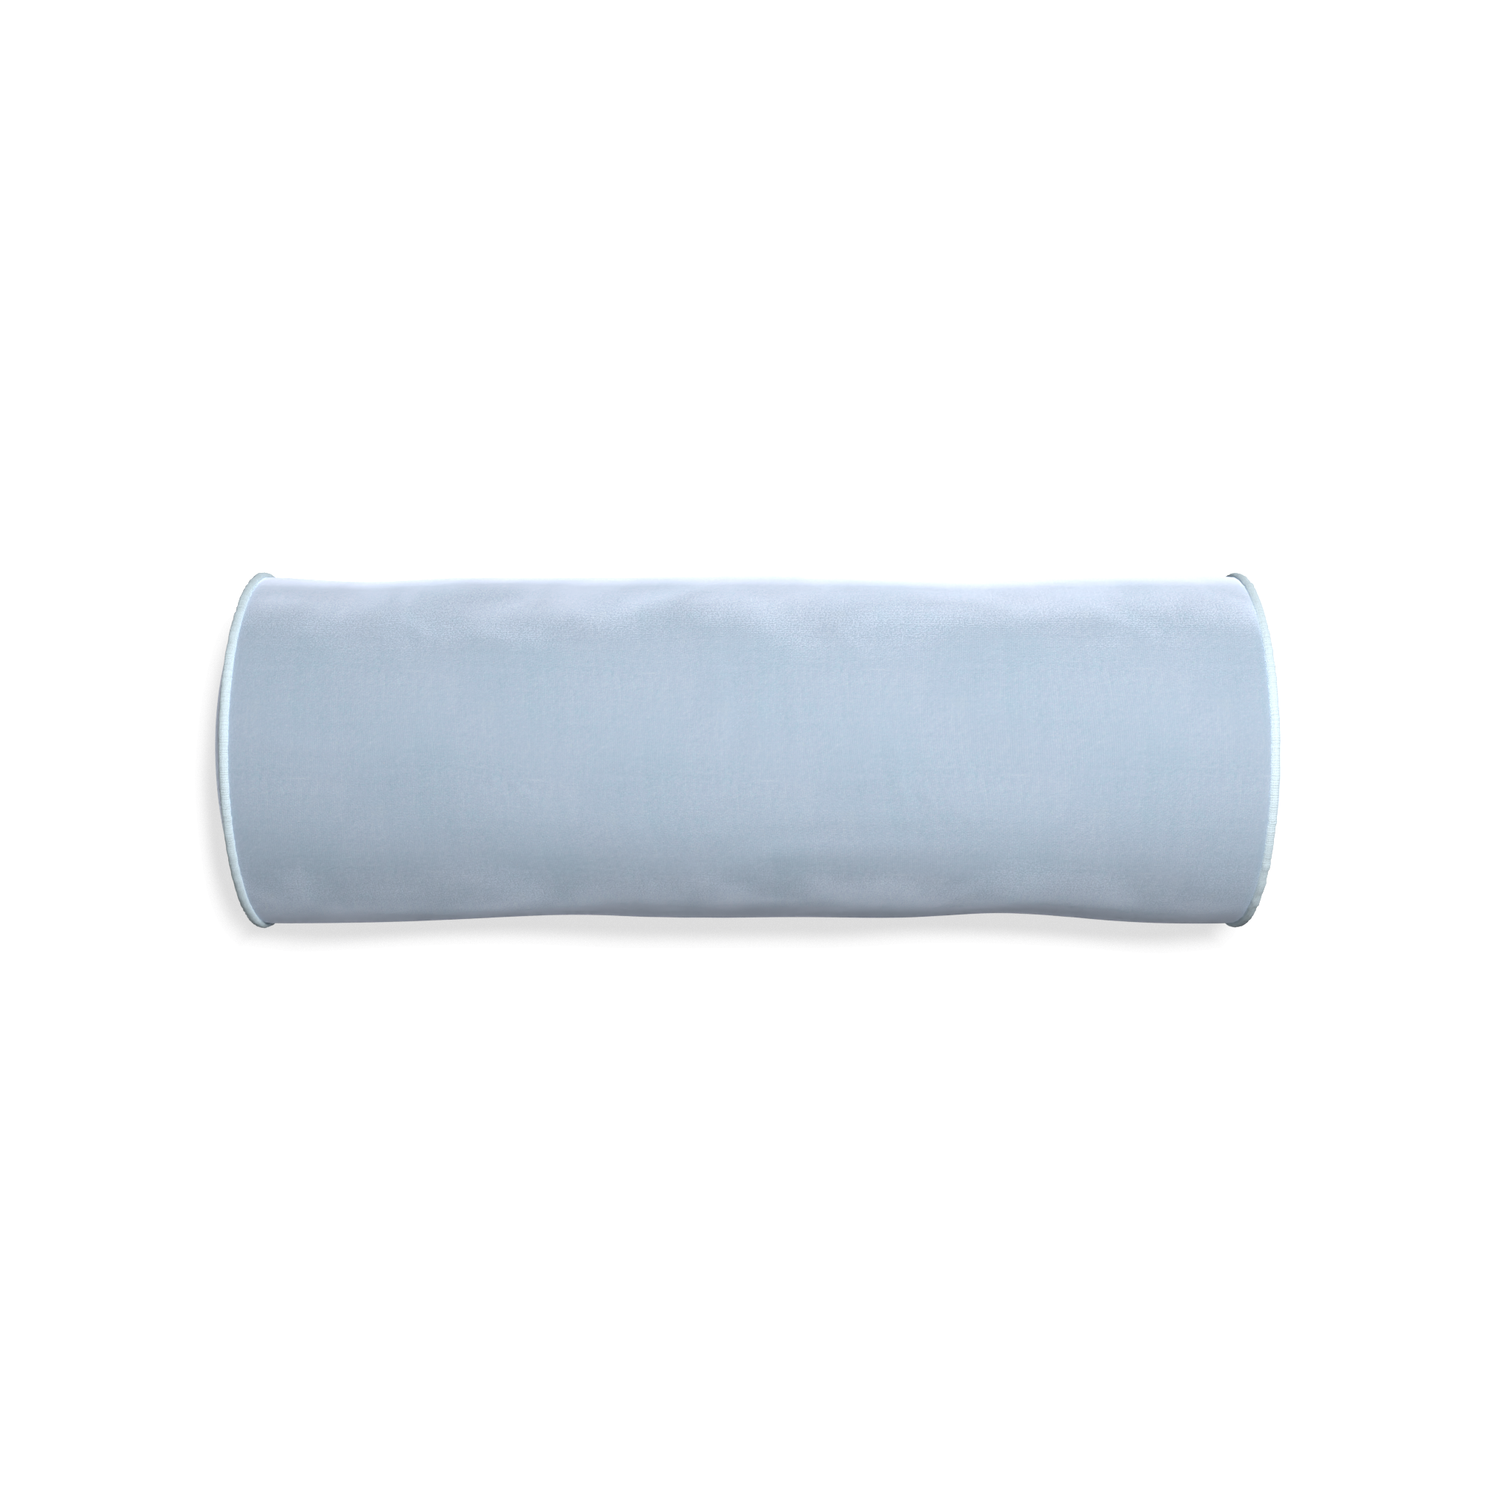 Bolster sky velvet custom pillow with powder piping on white background